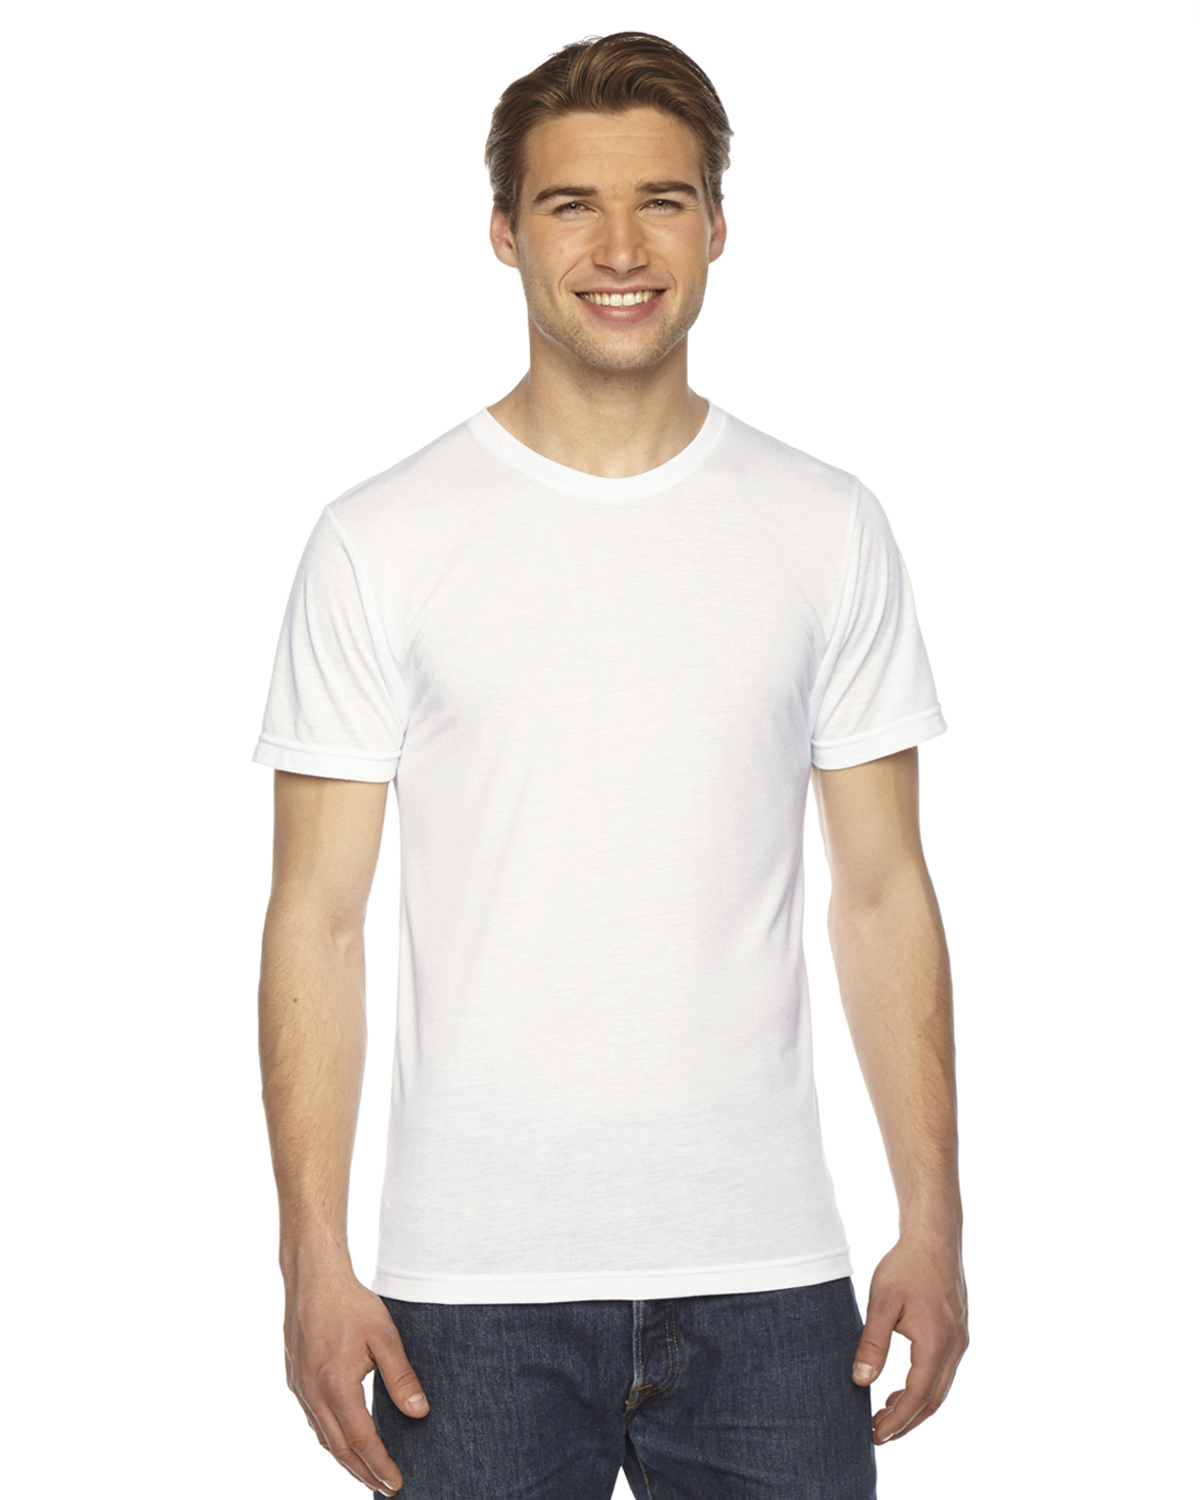 PL401W American Apparel Unisex Sublimation T-Shirt